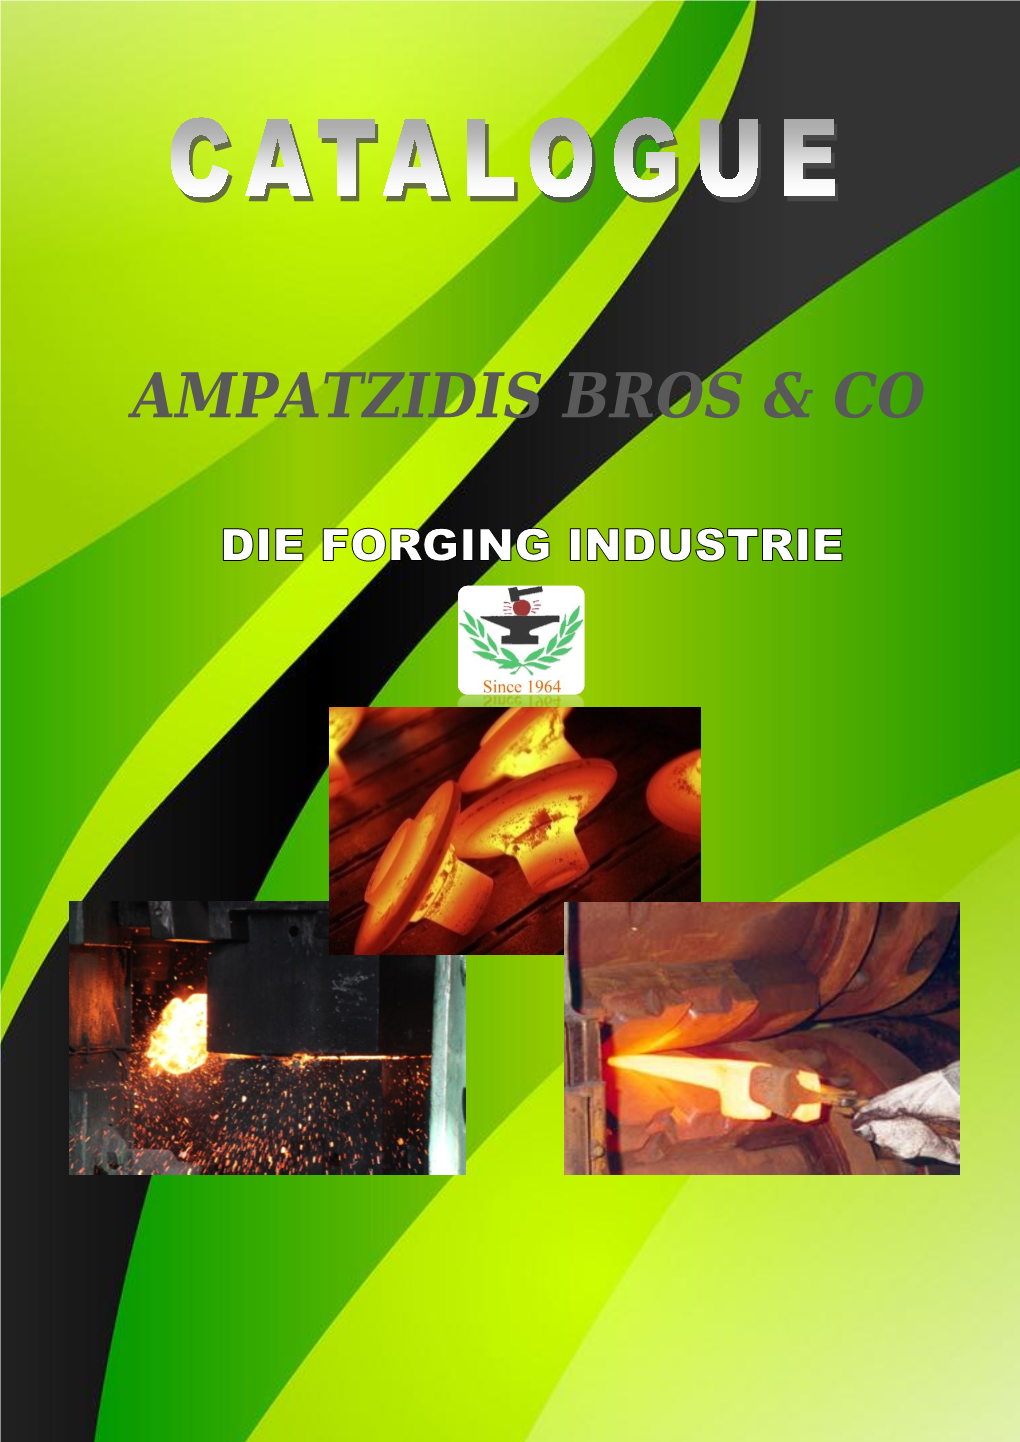 Ampatzidis Bros & Co